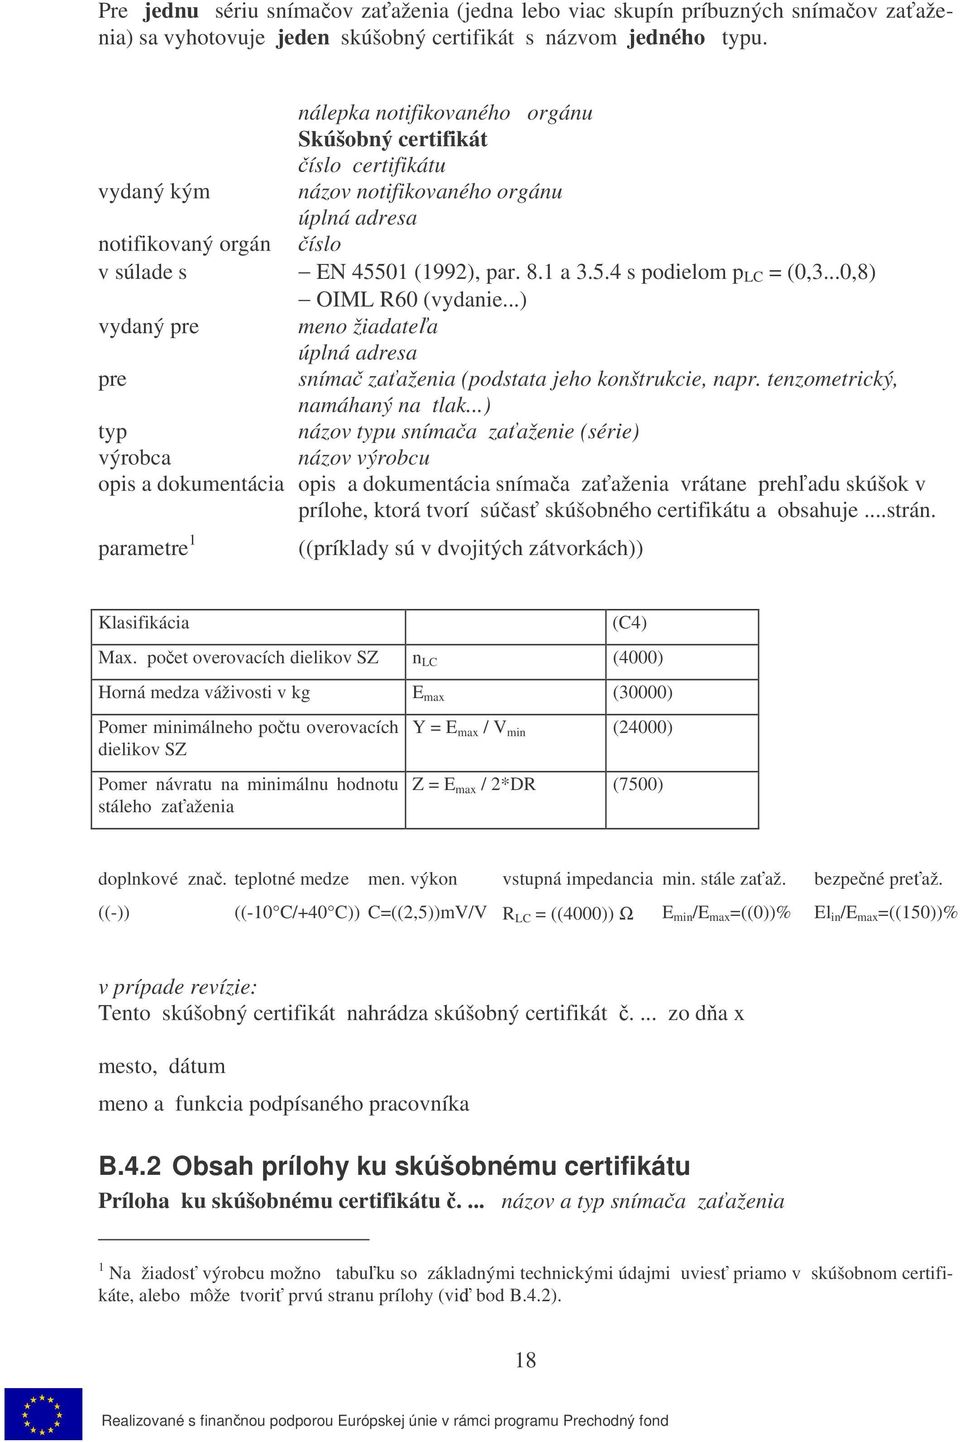 ..0,8) OIML R60 (vydanie...) vydaný pre meno žiadatea úplná adresa pre sníma zaaženia (podstata jeho konštrukcie, napr. tenzometrický, namáhaný na tlak.